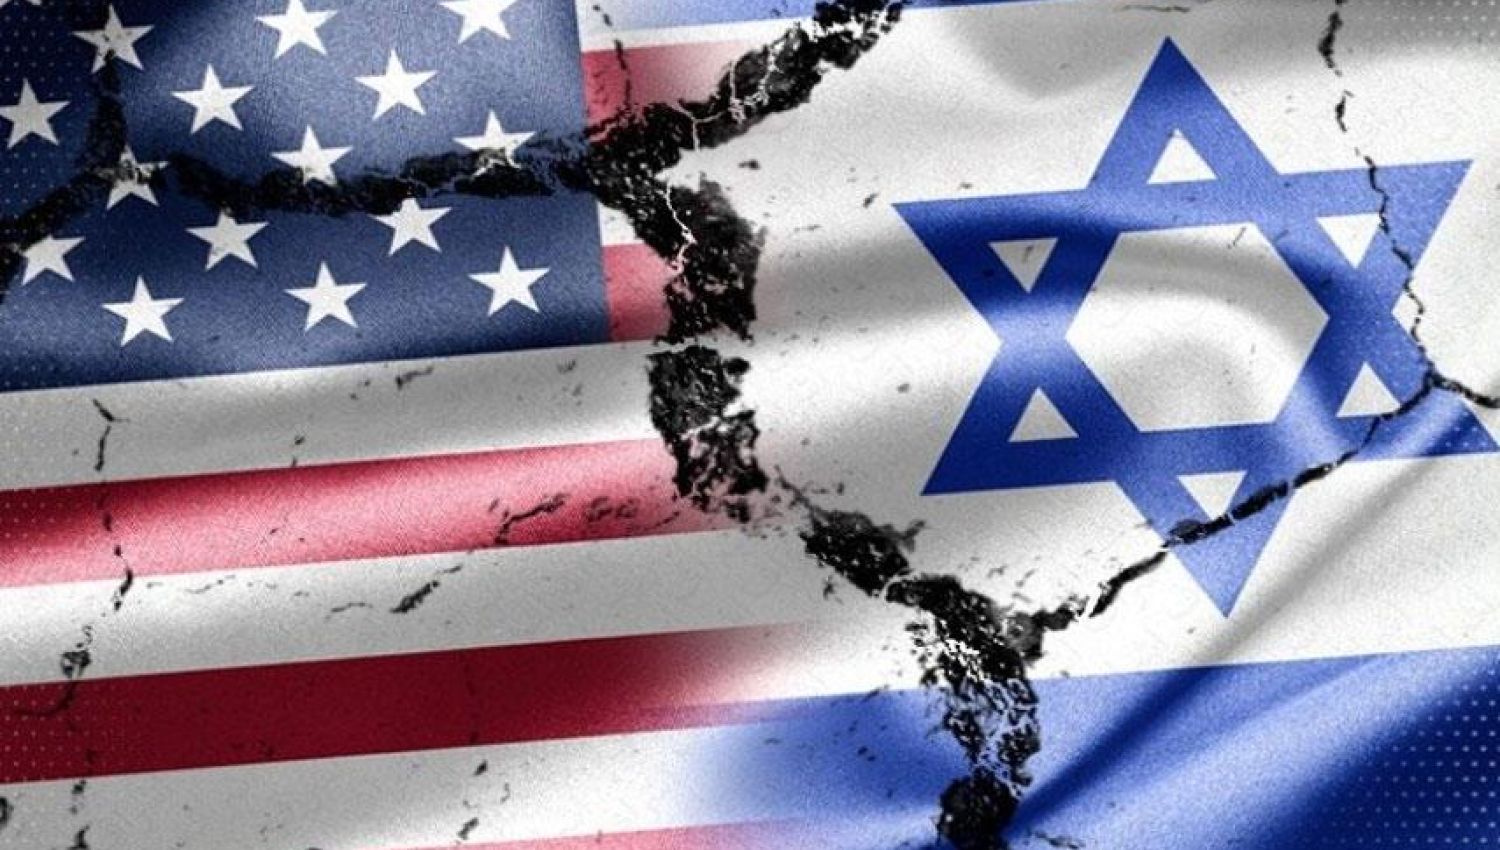 هآرتس: واشنطن قد تعيد تقييم علاقاتها مع إسرائيل بعد توقيع الاتفاق النووي!